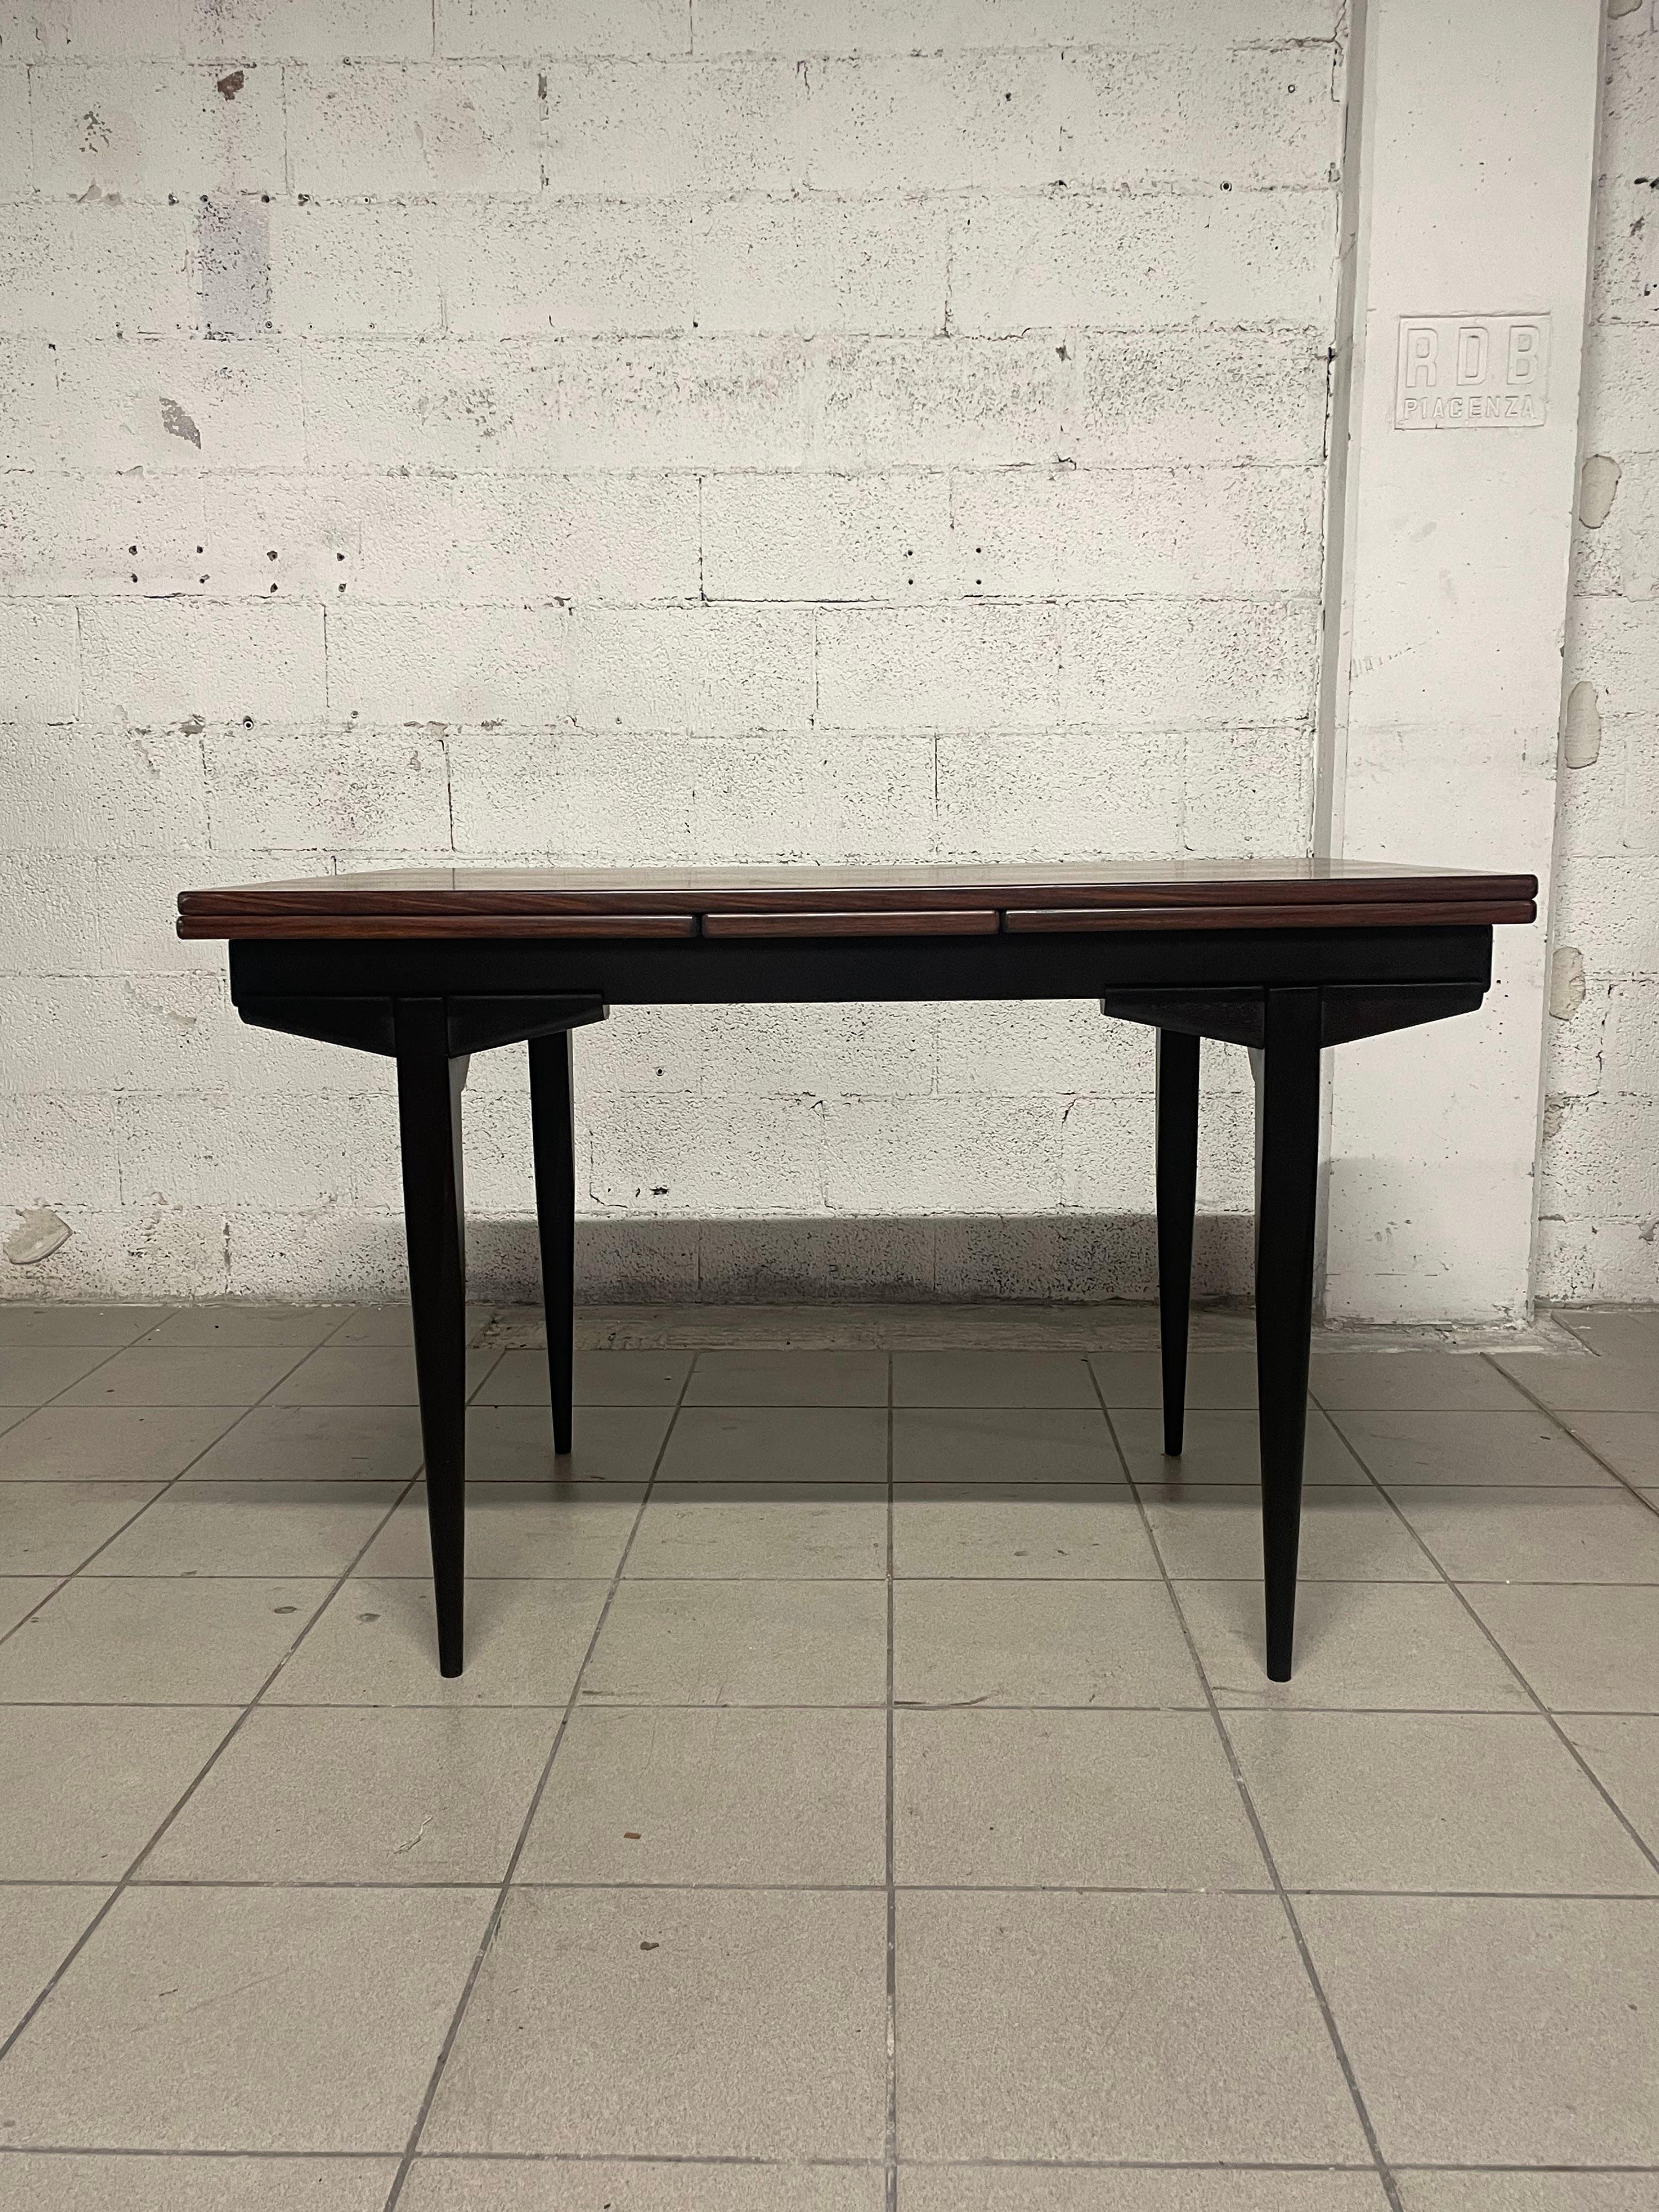 Ausziehbarer Tisch aus Palisanderholz aus den 1960er Jahren mit gebeizten Holzbeinen.

Mit beiden Verlängerungen geöffnet, erreicht der Tisch eine Länge von 213 cm.
Er ist perfekt für einen Wohnbereich, in dem bei Bedarf bis zu 12 Personen bequem